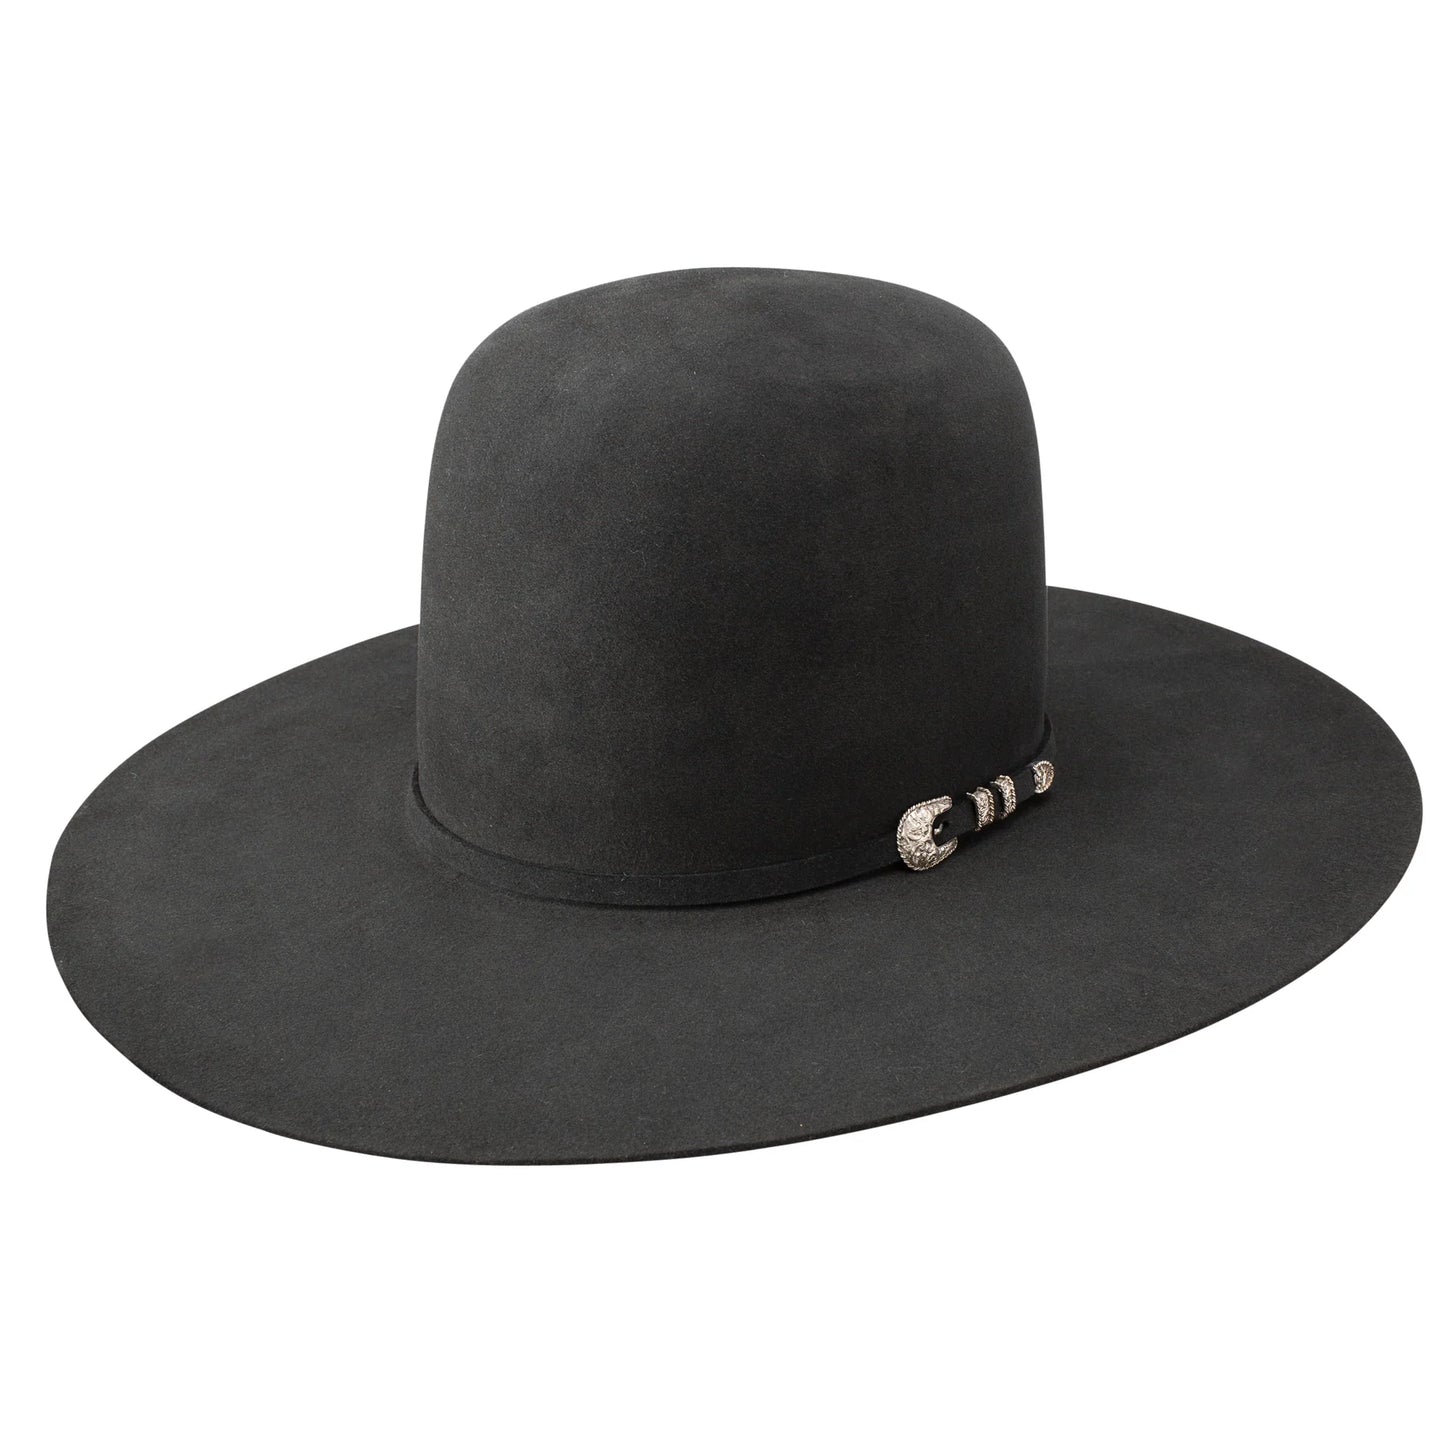 Resistol Black Hills 30X Sombrero de fieltro color bronce 6" Corona abierta